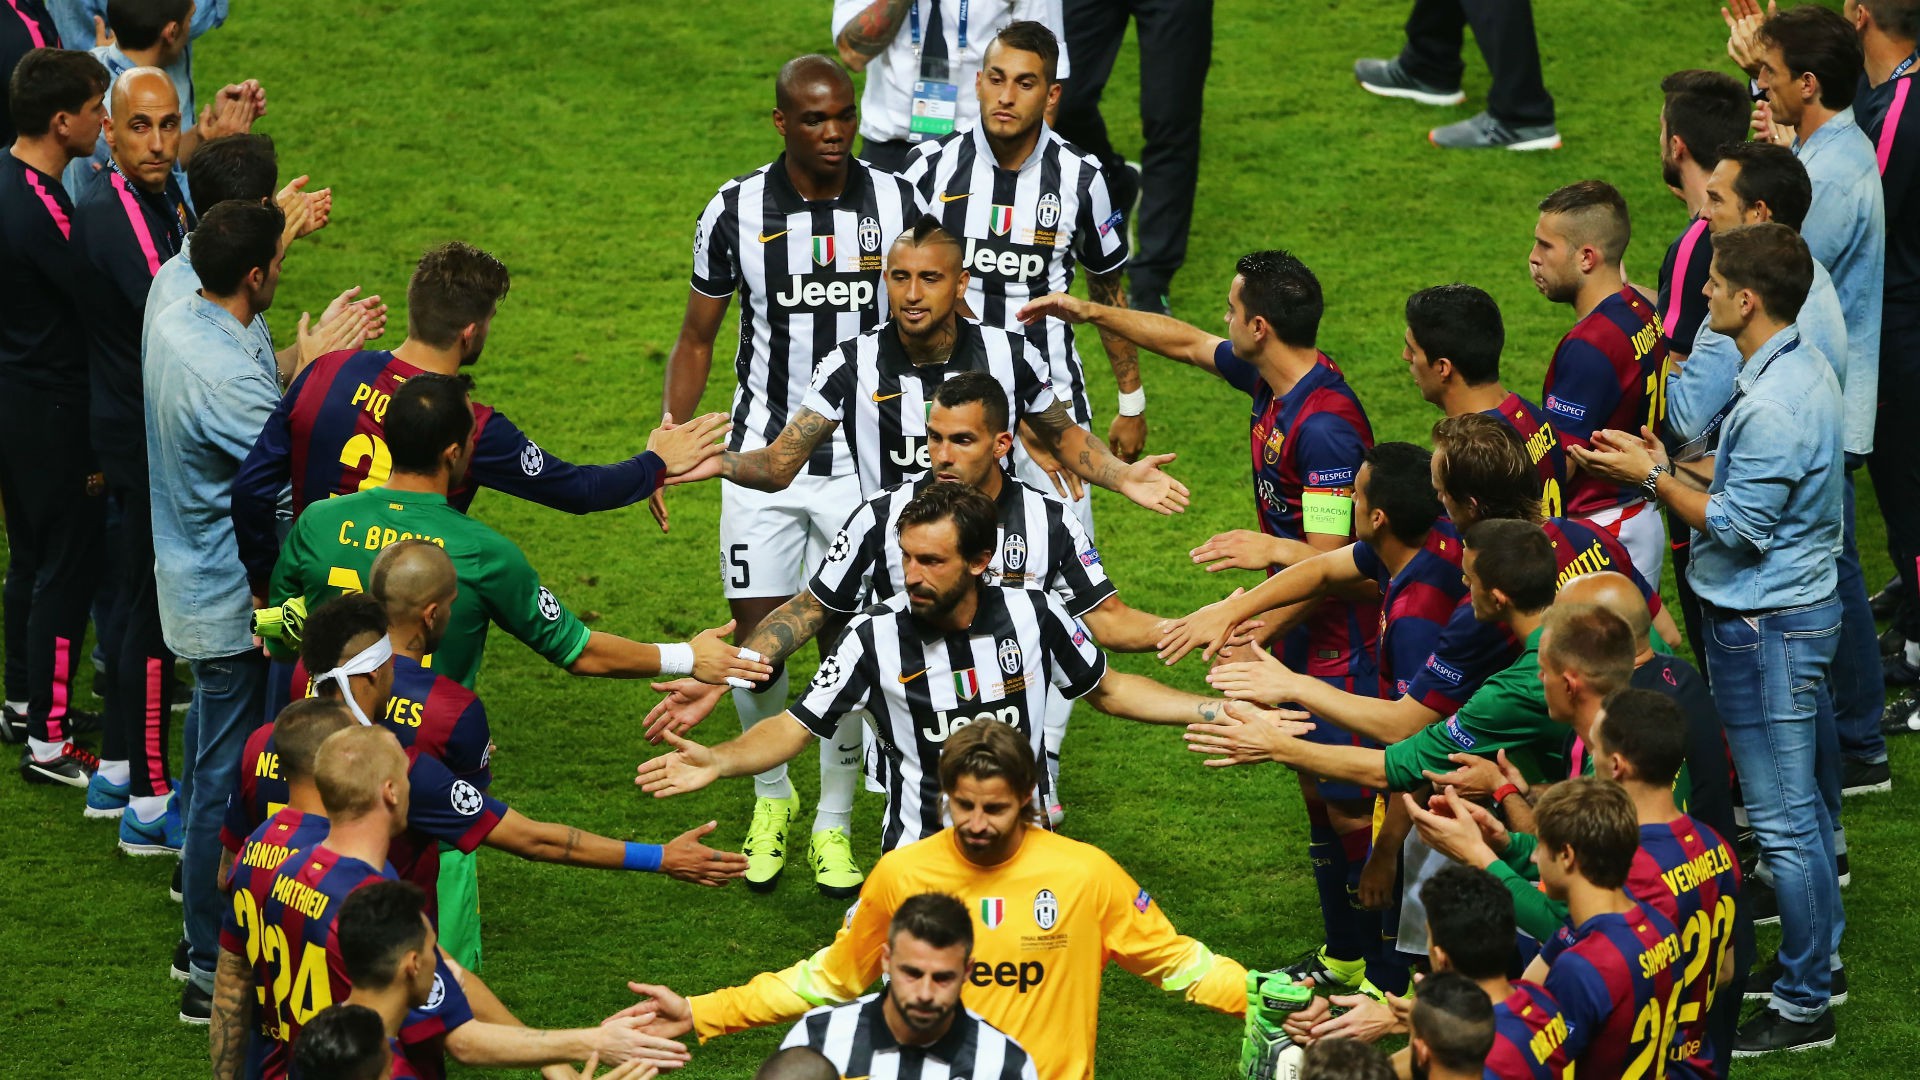 Hình ảnh: Barca lập hàng rào danh dự để thể hiện sự tôn trọng với Juventus ở trận chung kết Champions League 2014/2015